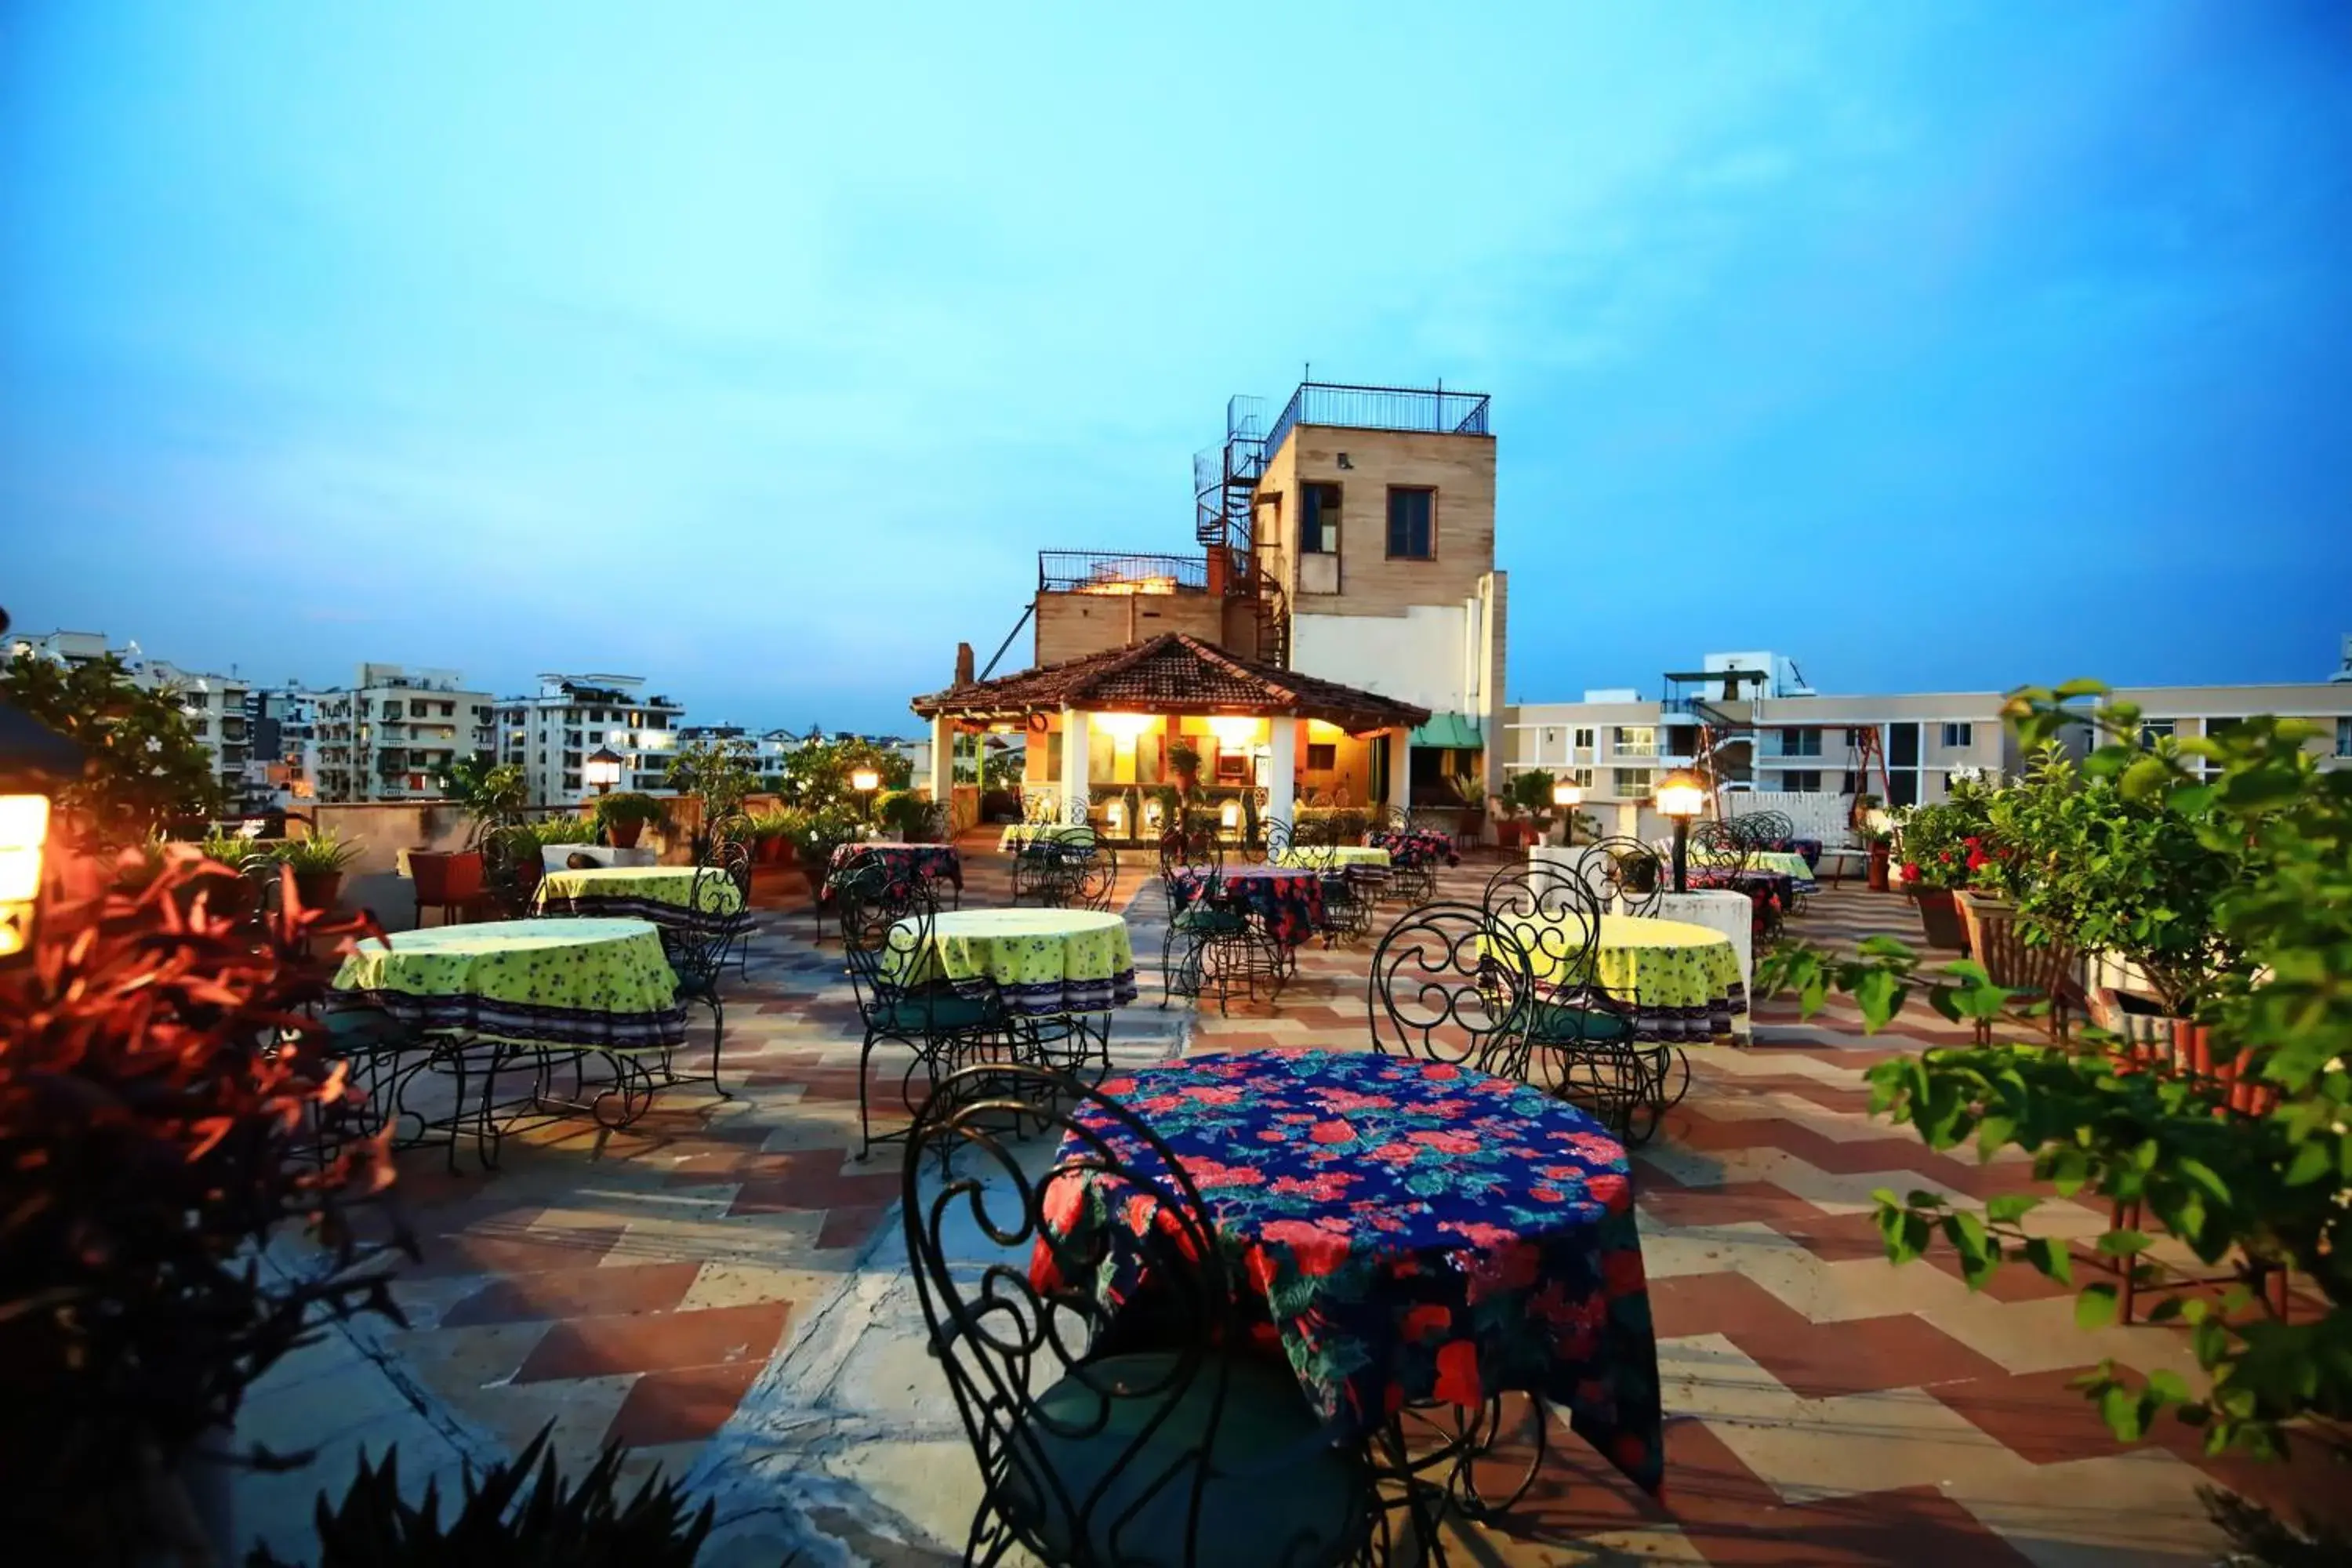 Restaurant/places to eat in Jaipur Inn